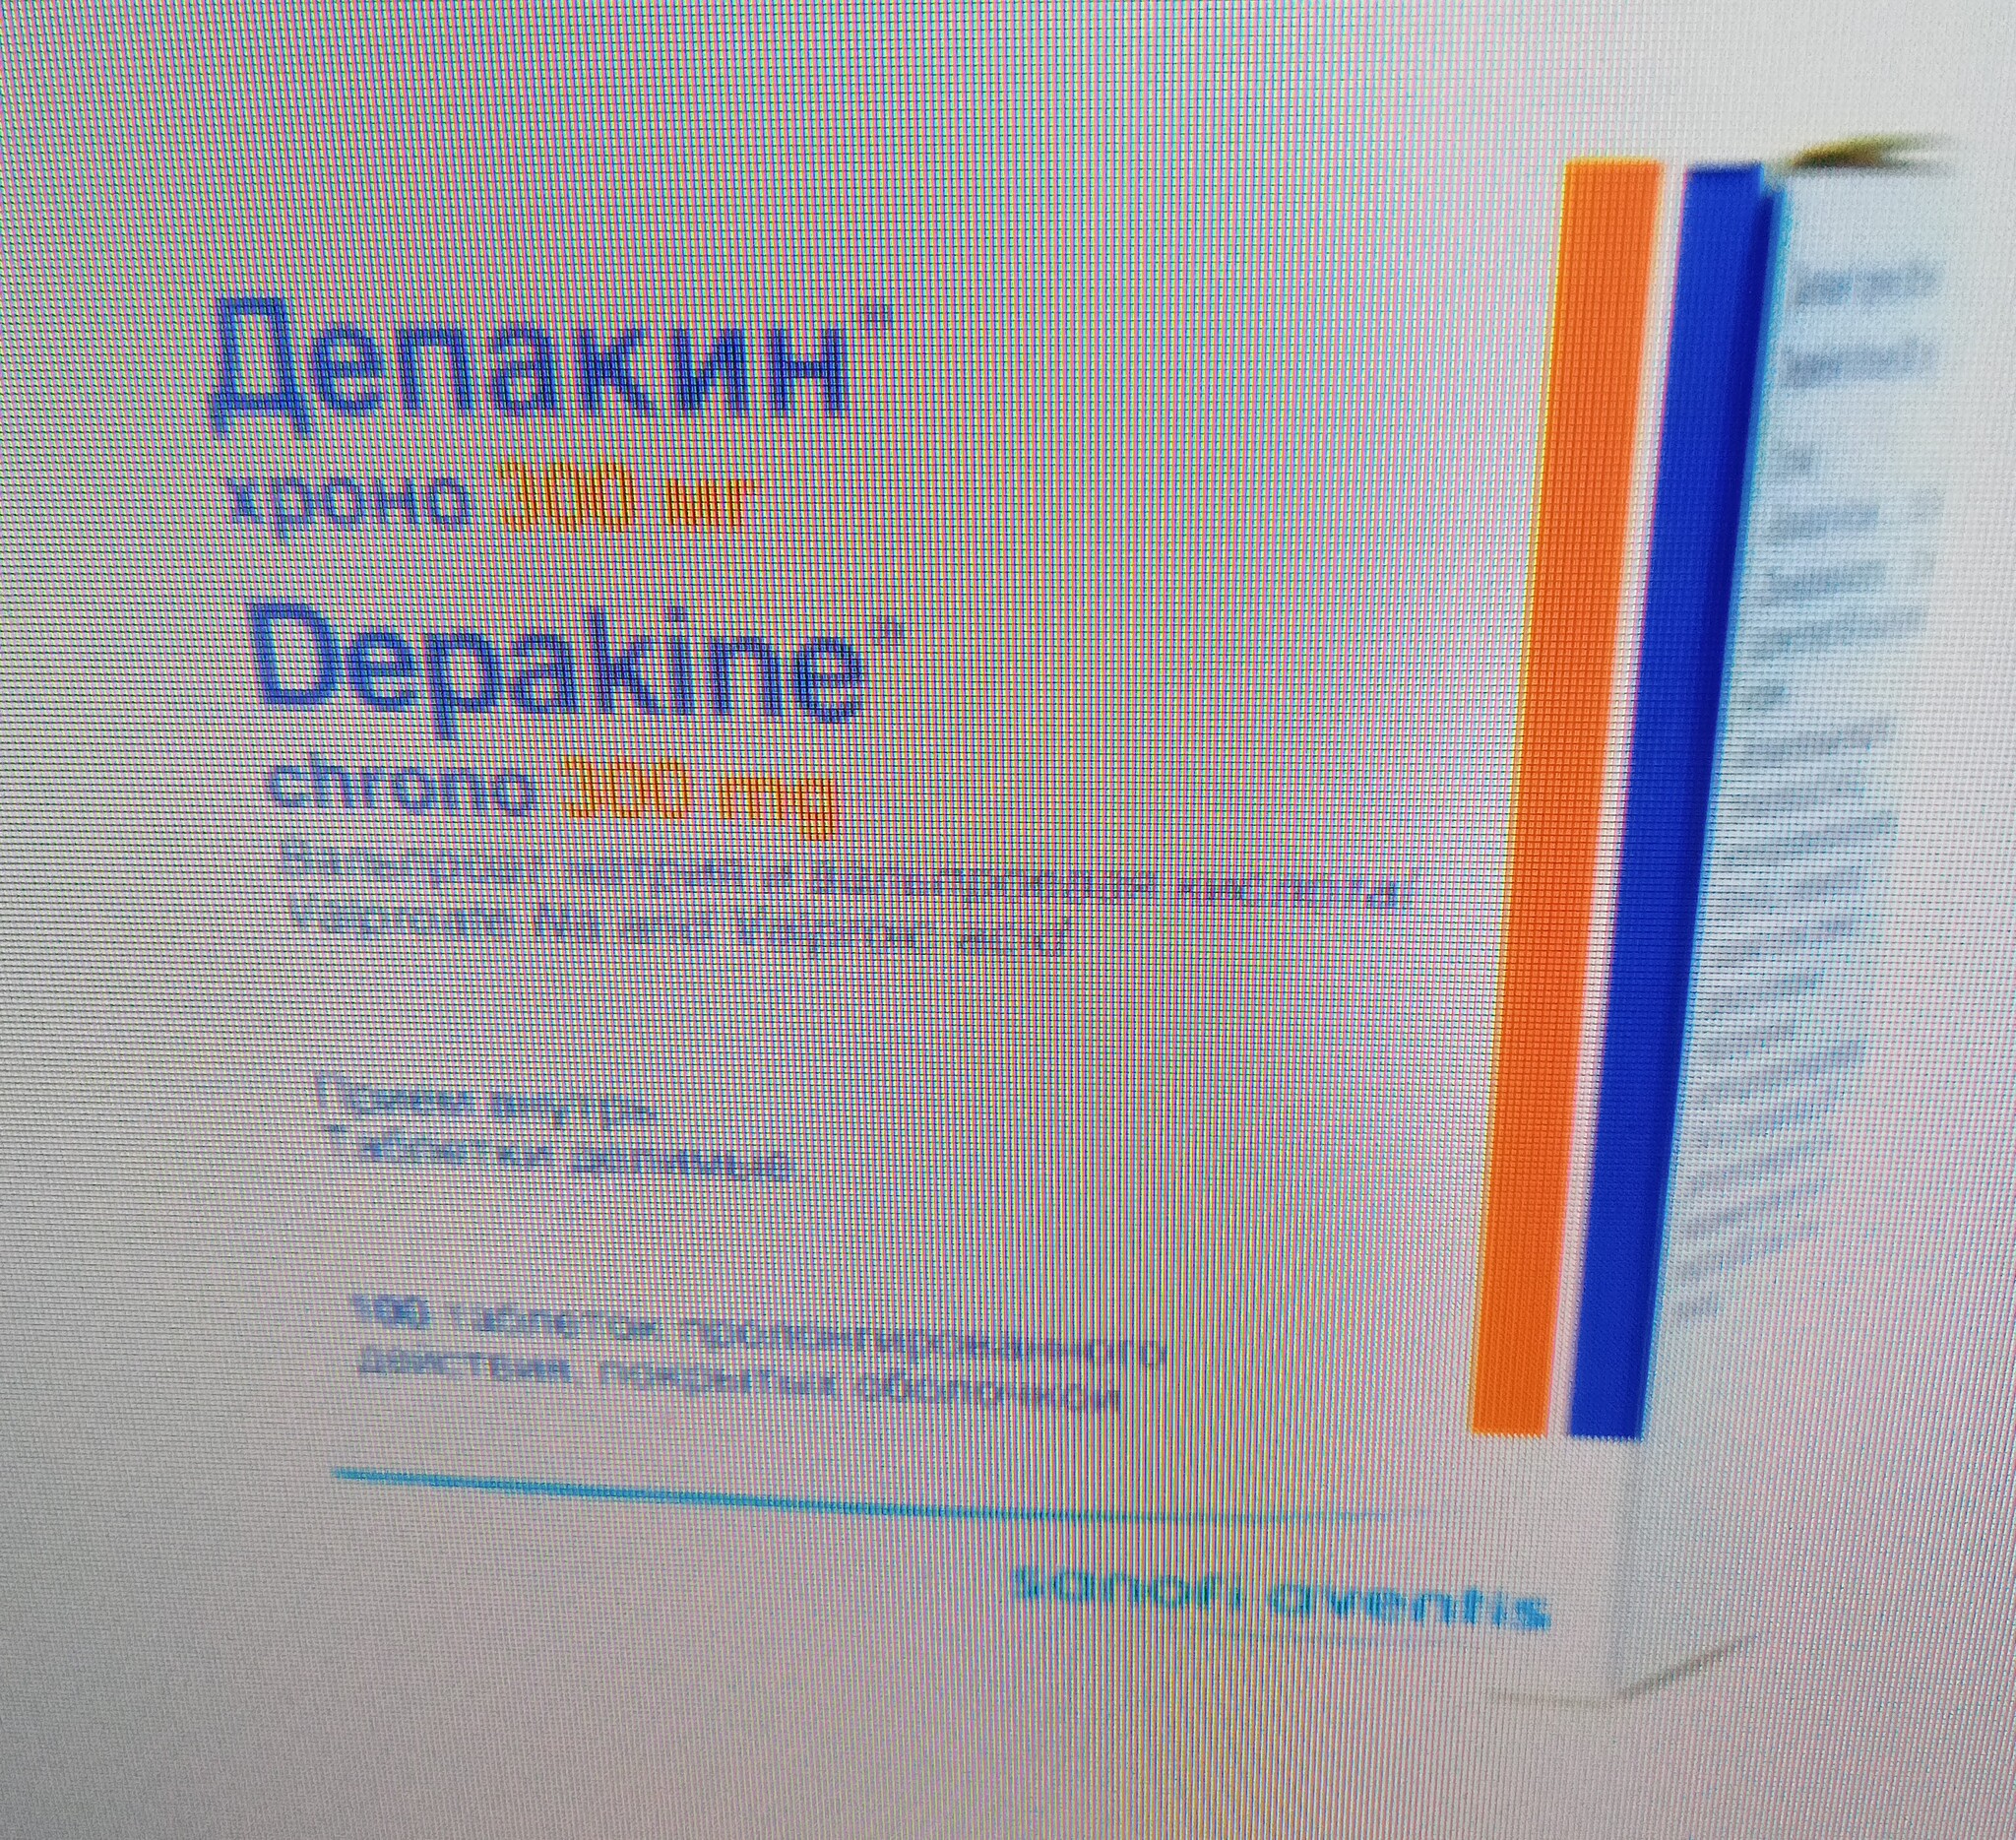 Депакин Хроно 300мг не могу найти ни в одной аптеке в Краснодаре может .